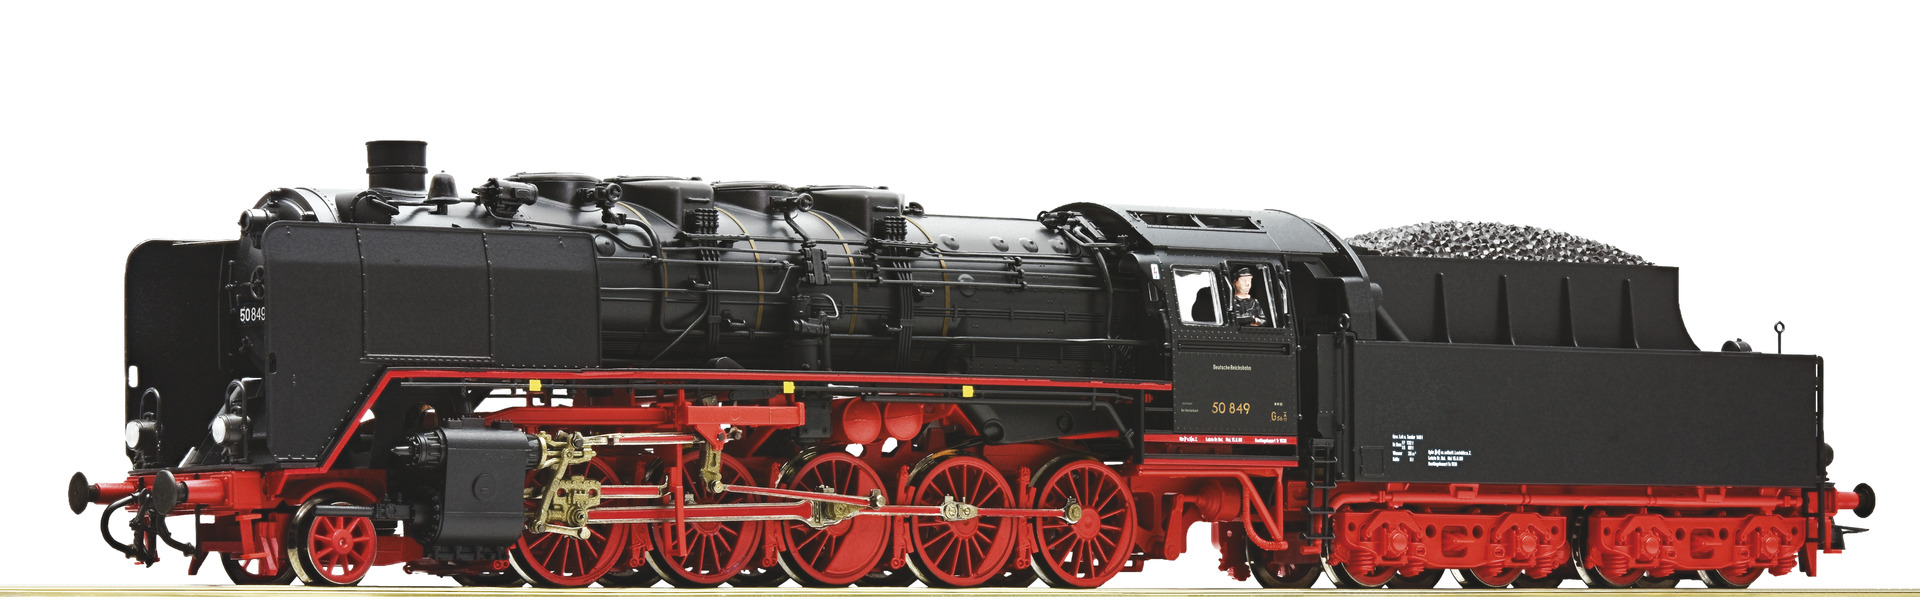 Dampflokomotive 50 849, DR - 7120011